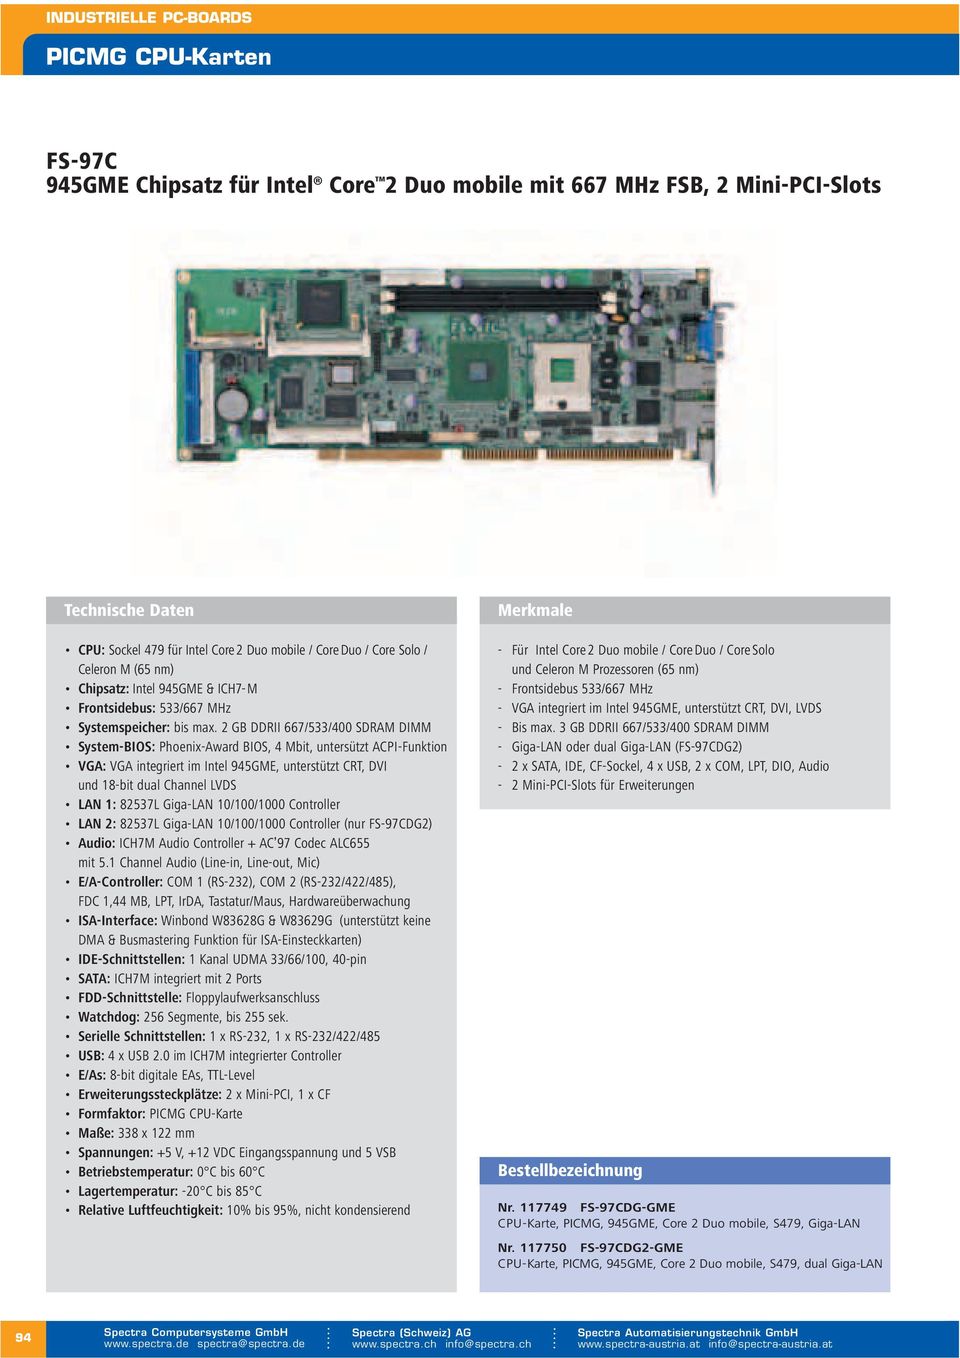 2 GB DDRII 667/533/400 SDRAM DIMM System-BIOS: Phoenix-Award BIOS, 4 Mbit, untersützt ACPI-Funktion VGA: VGA im Intel 945GME, unterstützt CRT, DVI und 18-bit dual Channel LVDS LAN 1: 82537L Giga-LAN